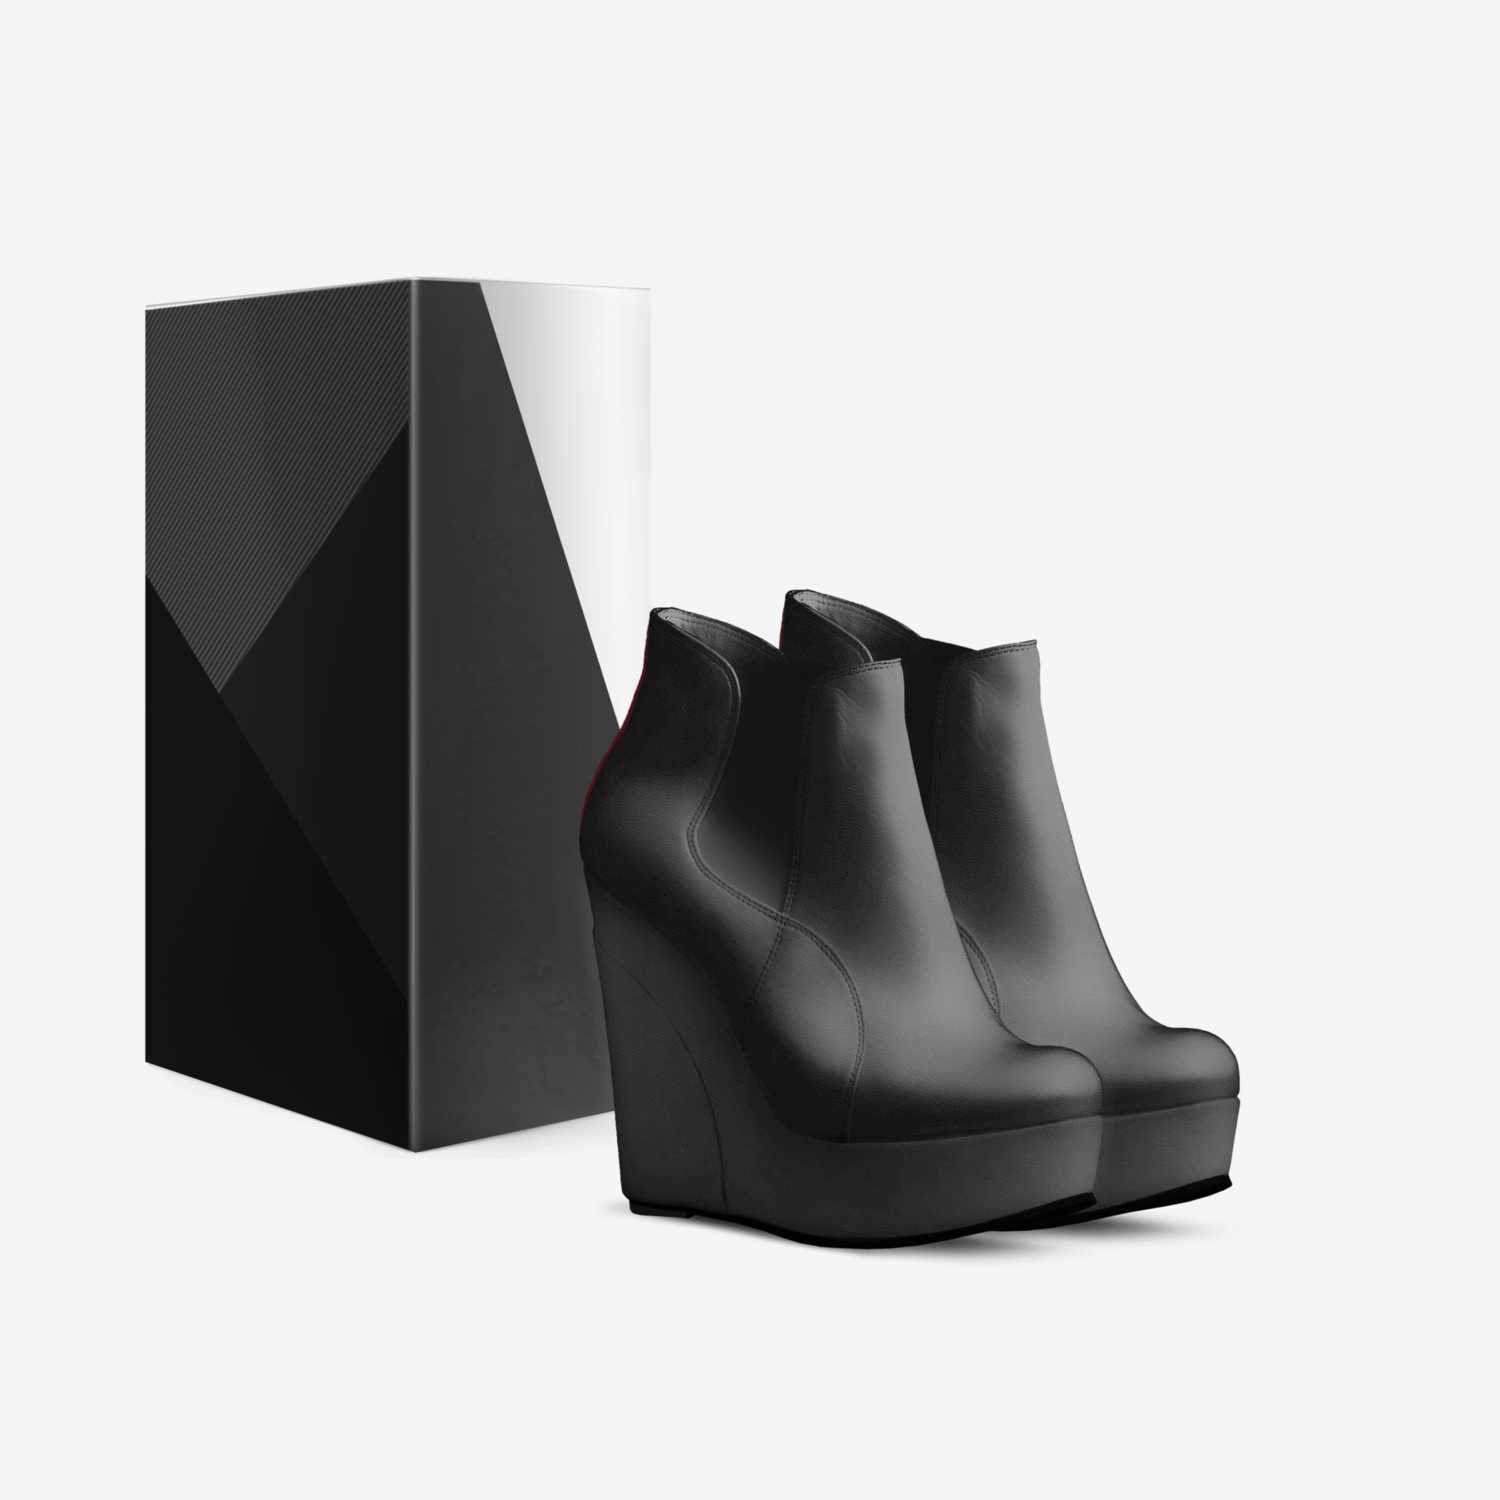 The Mia custom made in Italy shoes by Mia Mavis | Box view